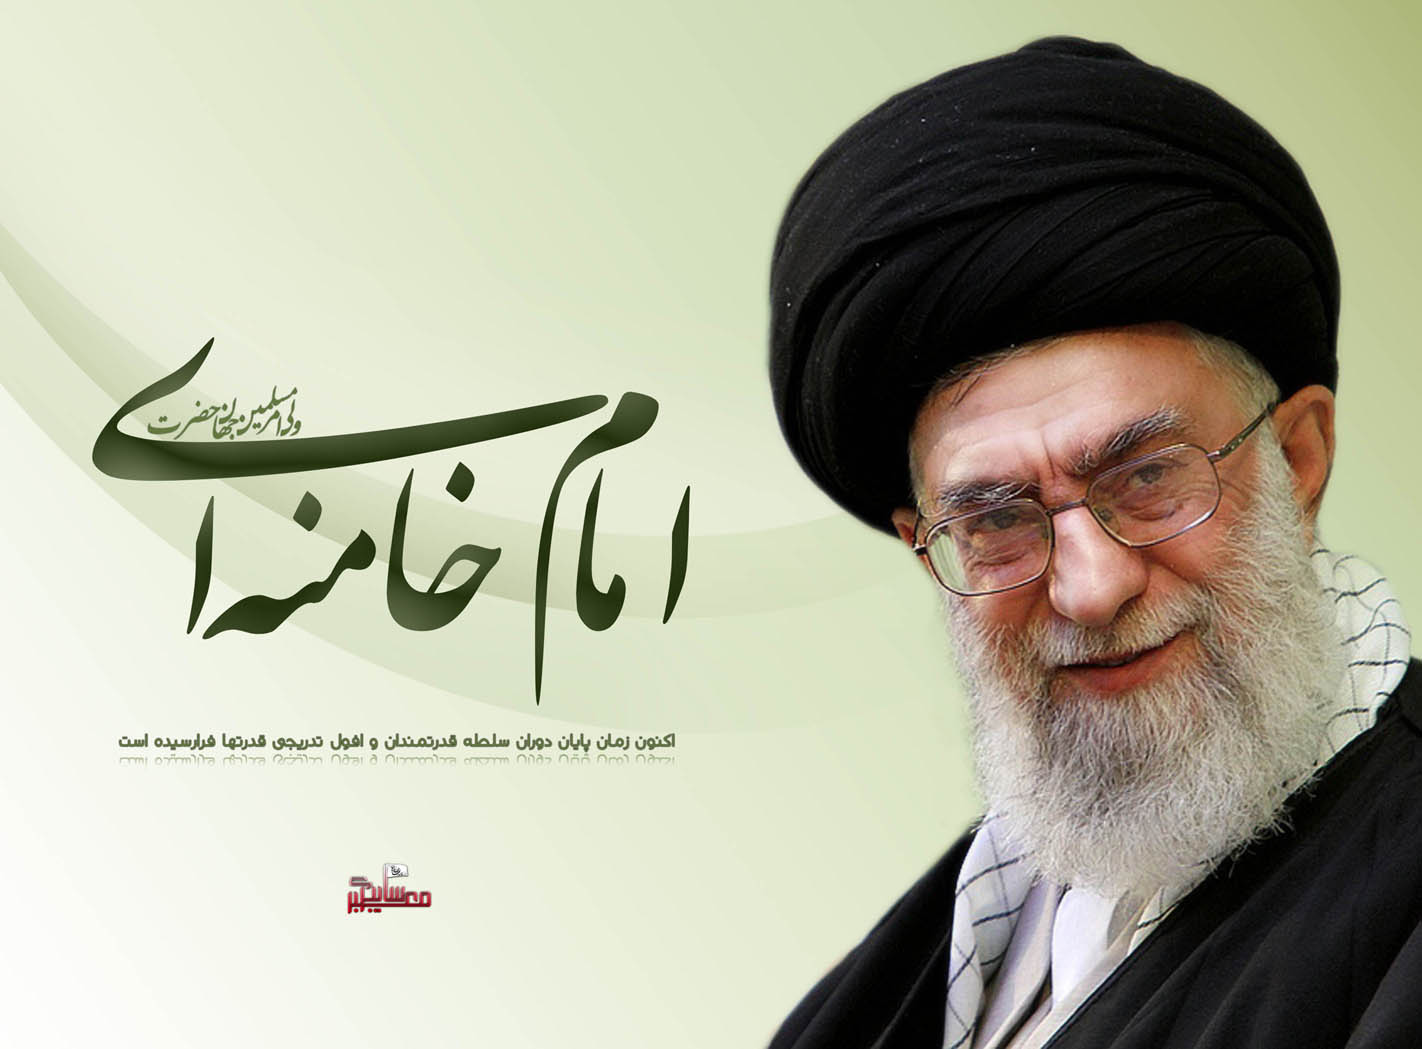 1_emam_khamenei_1_by_hmsk11-d3axqrd